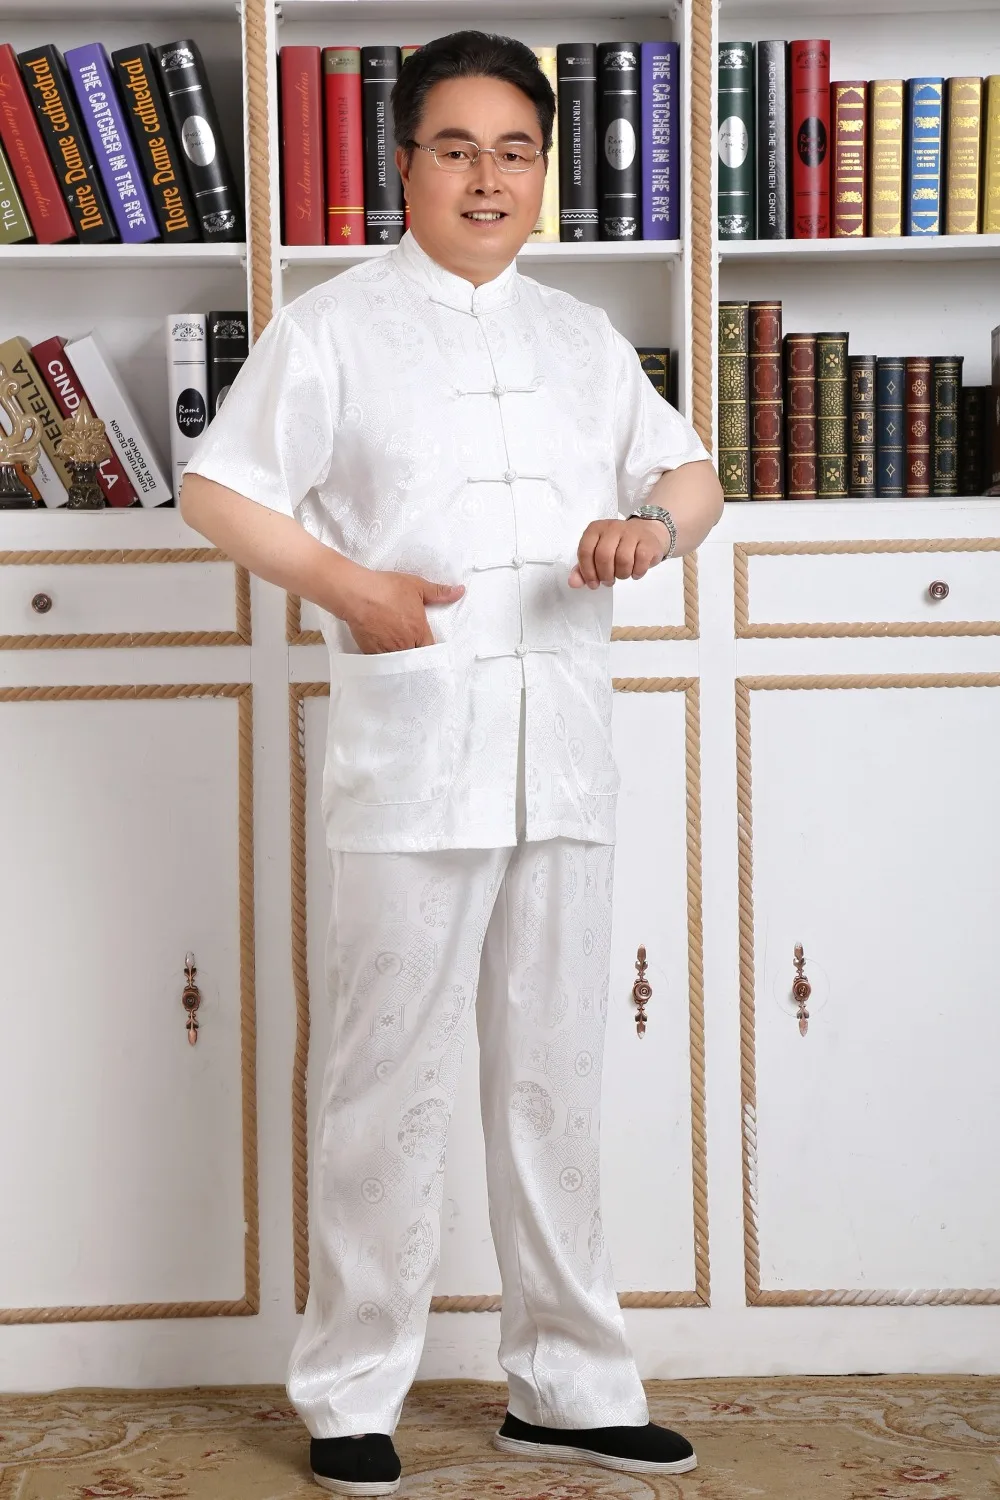 Шанхай история короткий рукав Тай Чи одежда комплект Китайская традиционная одежда форма для Кунг Фу АРТЕС marciais для пары ушу